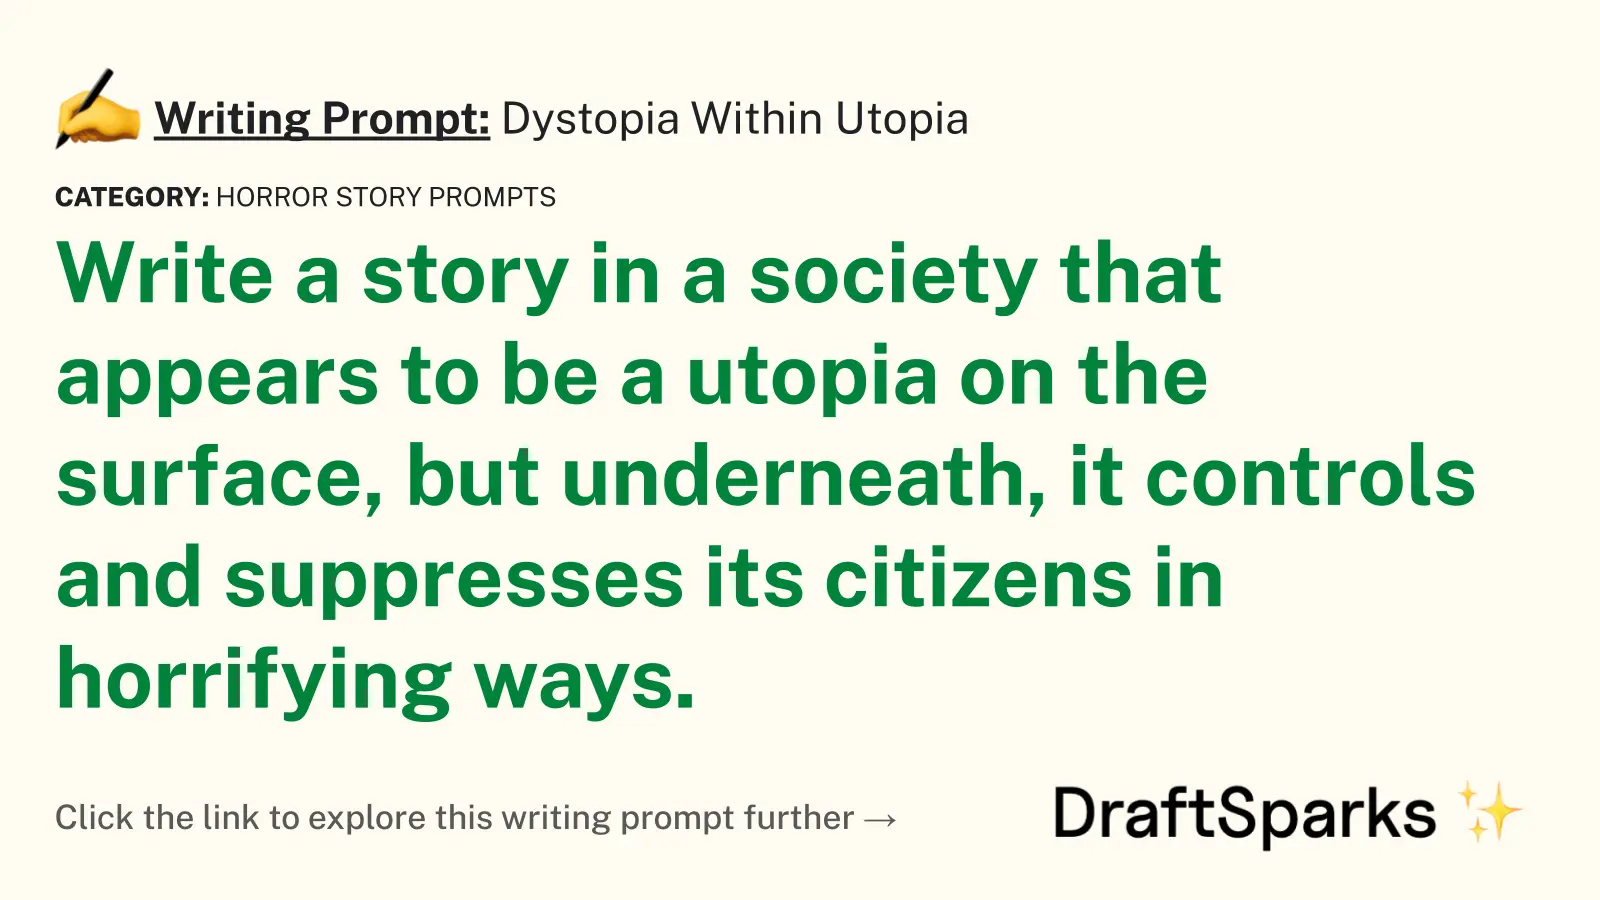 Dystopia Within Utopia